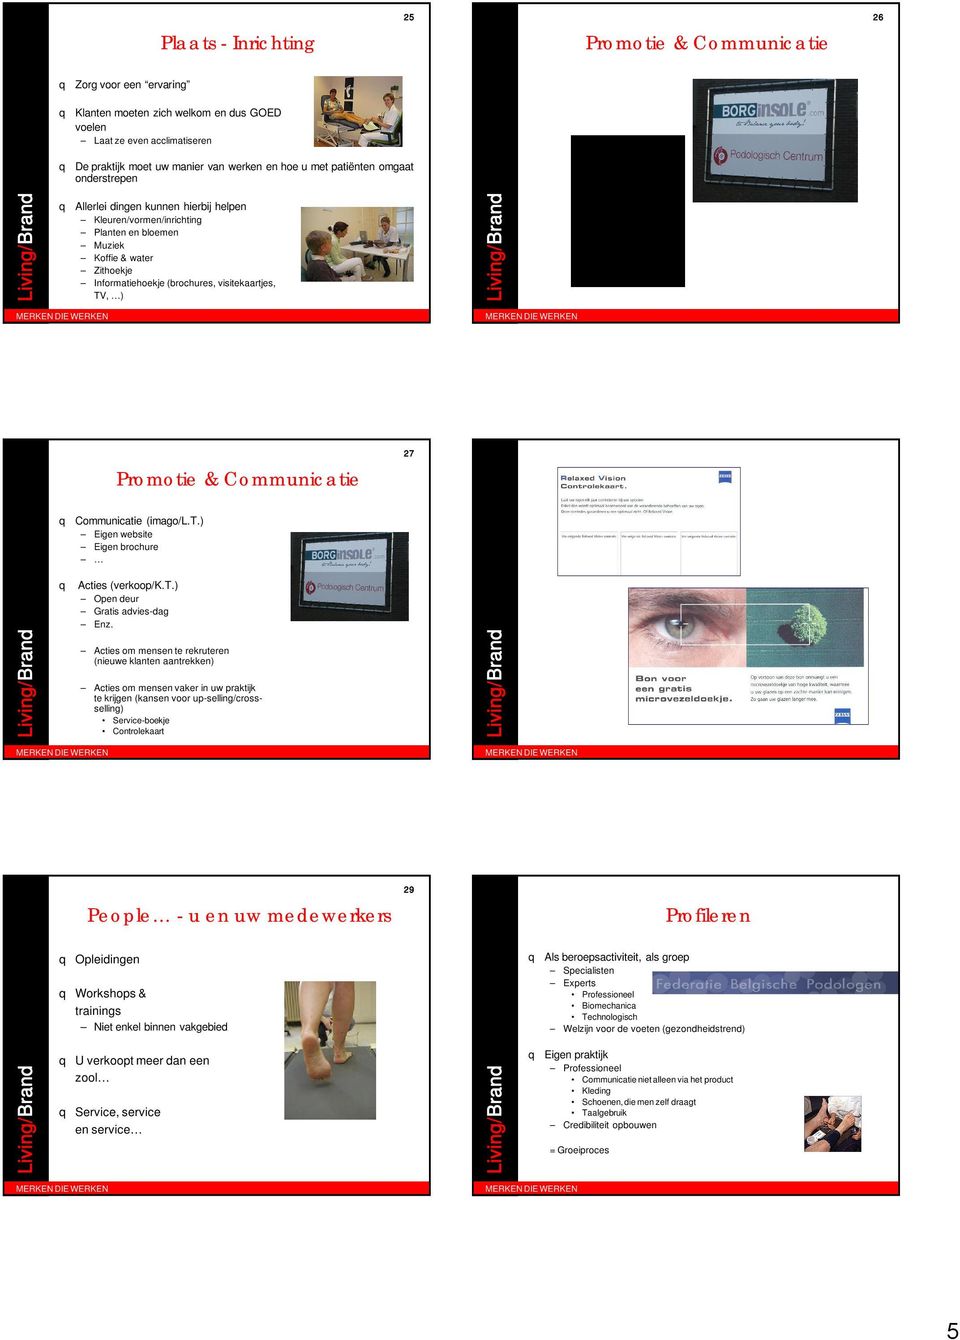 ) Promotie & Communicatie 27 q Communicatie (imago/l.t.) Eigen website Eigen brochure q Acties (verkoop/k.t.) Open deur Gratis advies-dag Enz.